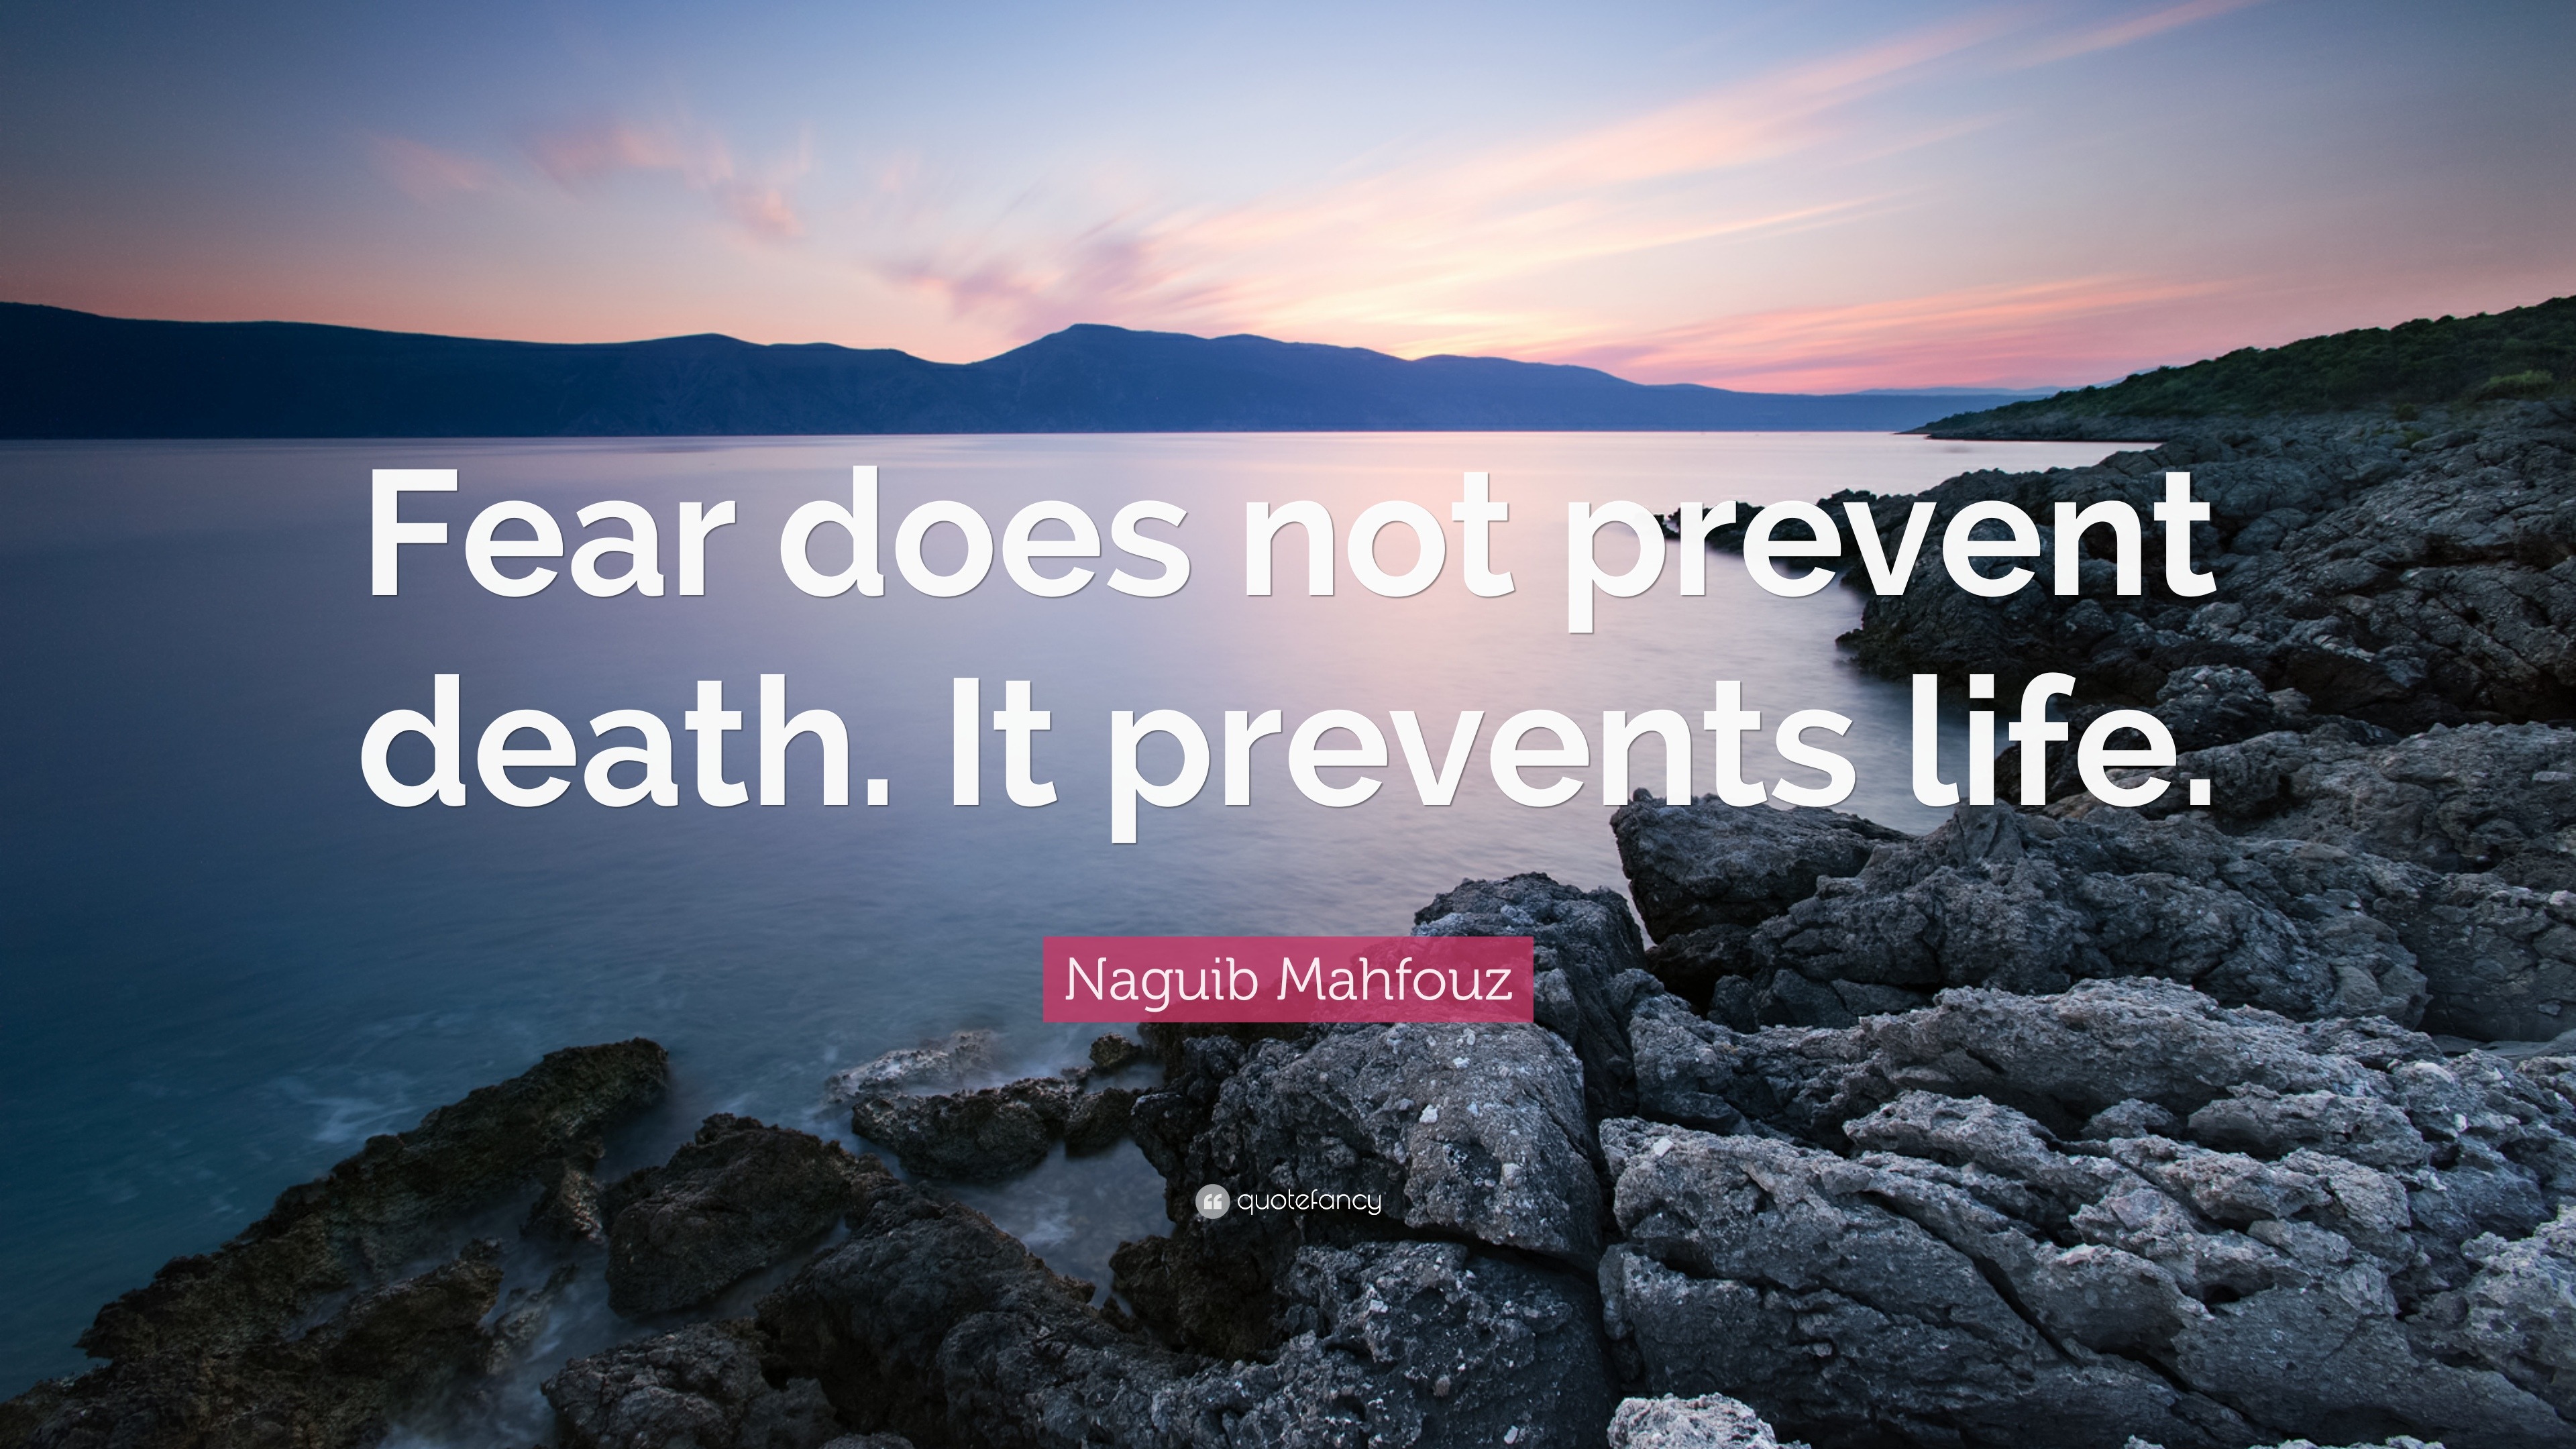 Naguib Mahfouz Quote: "Fear does not prevent death. It ...